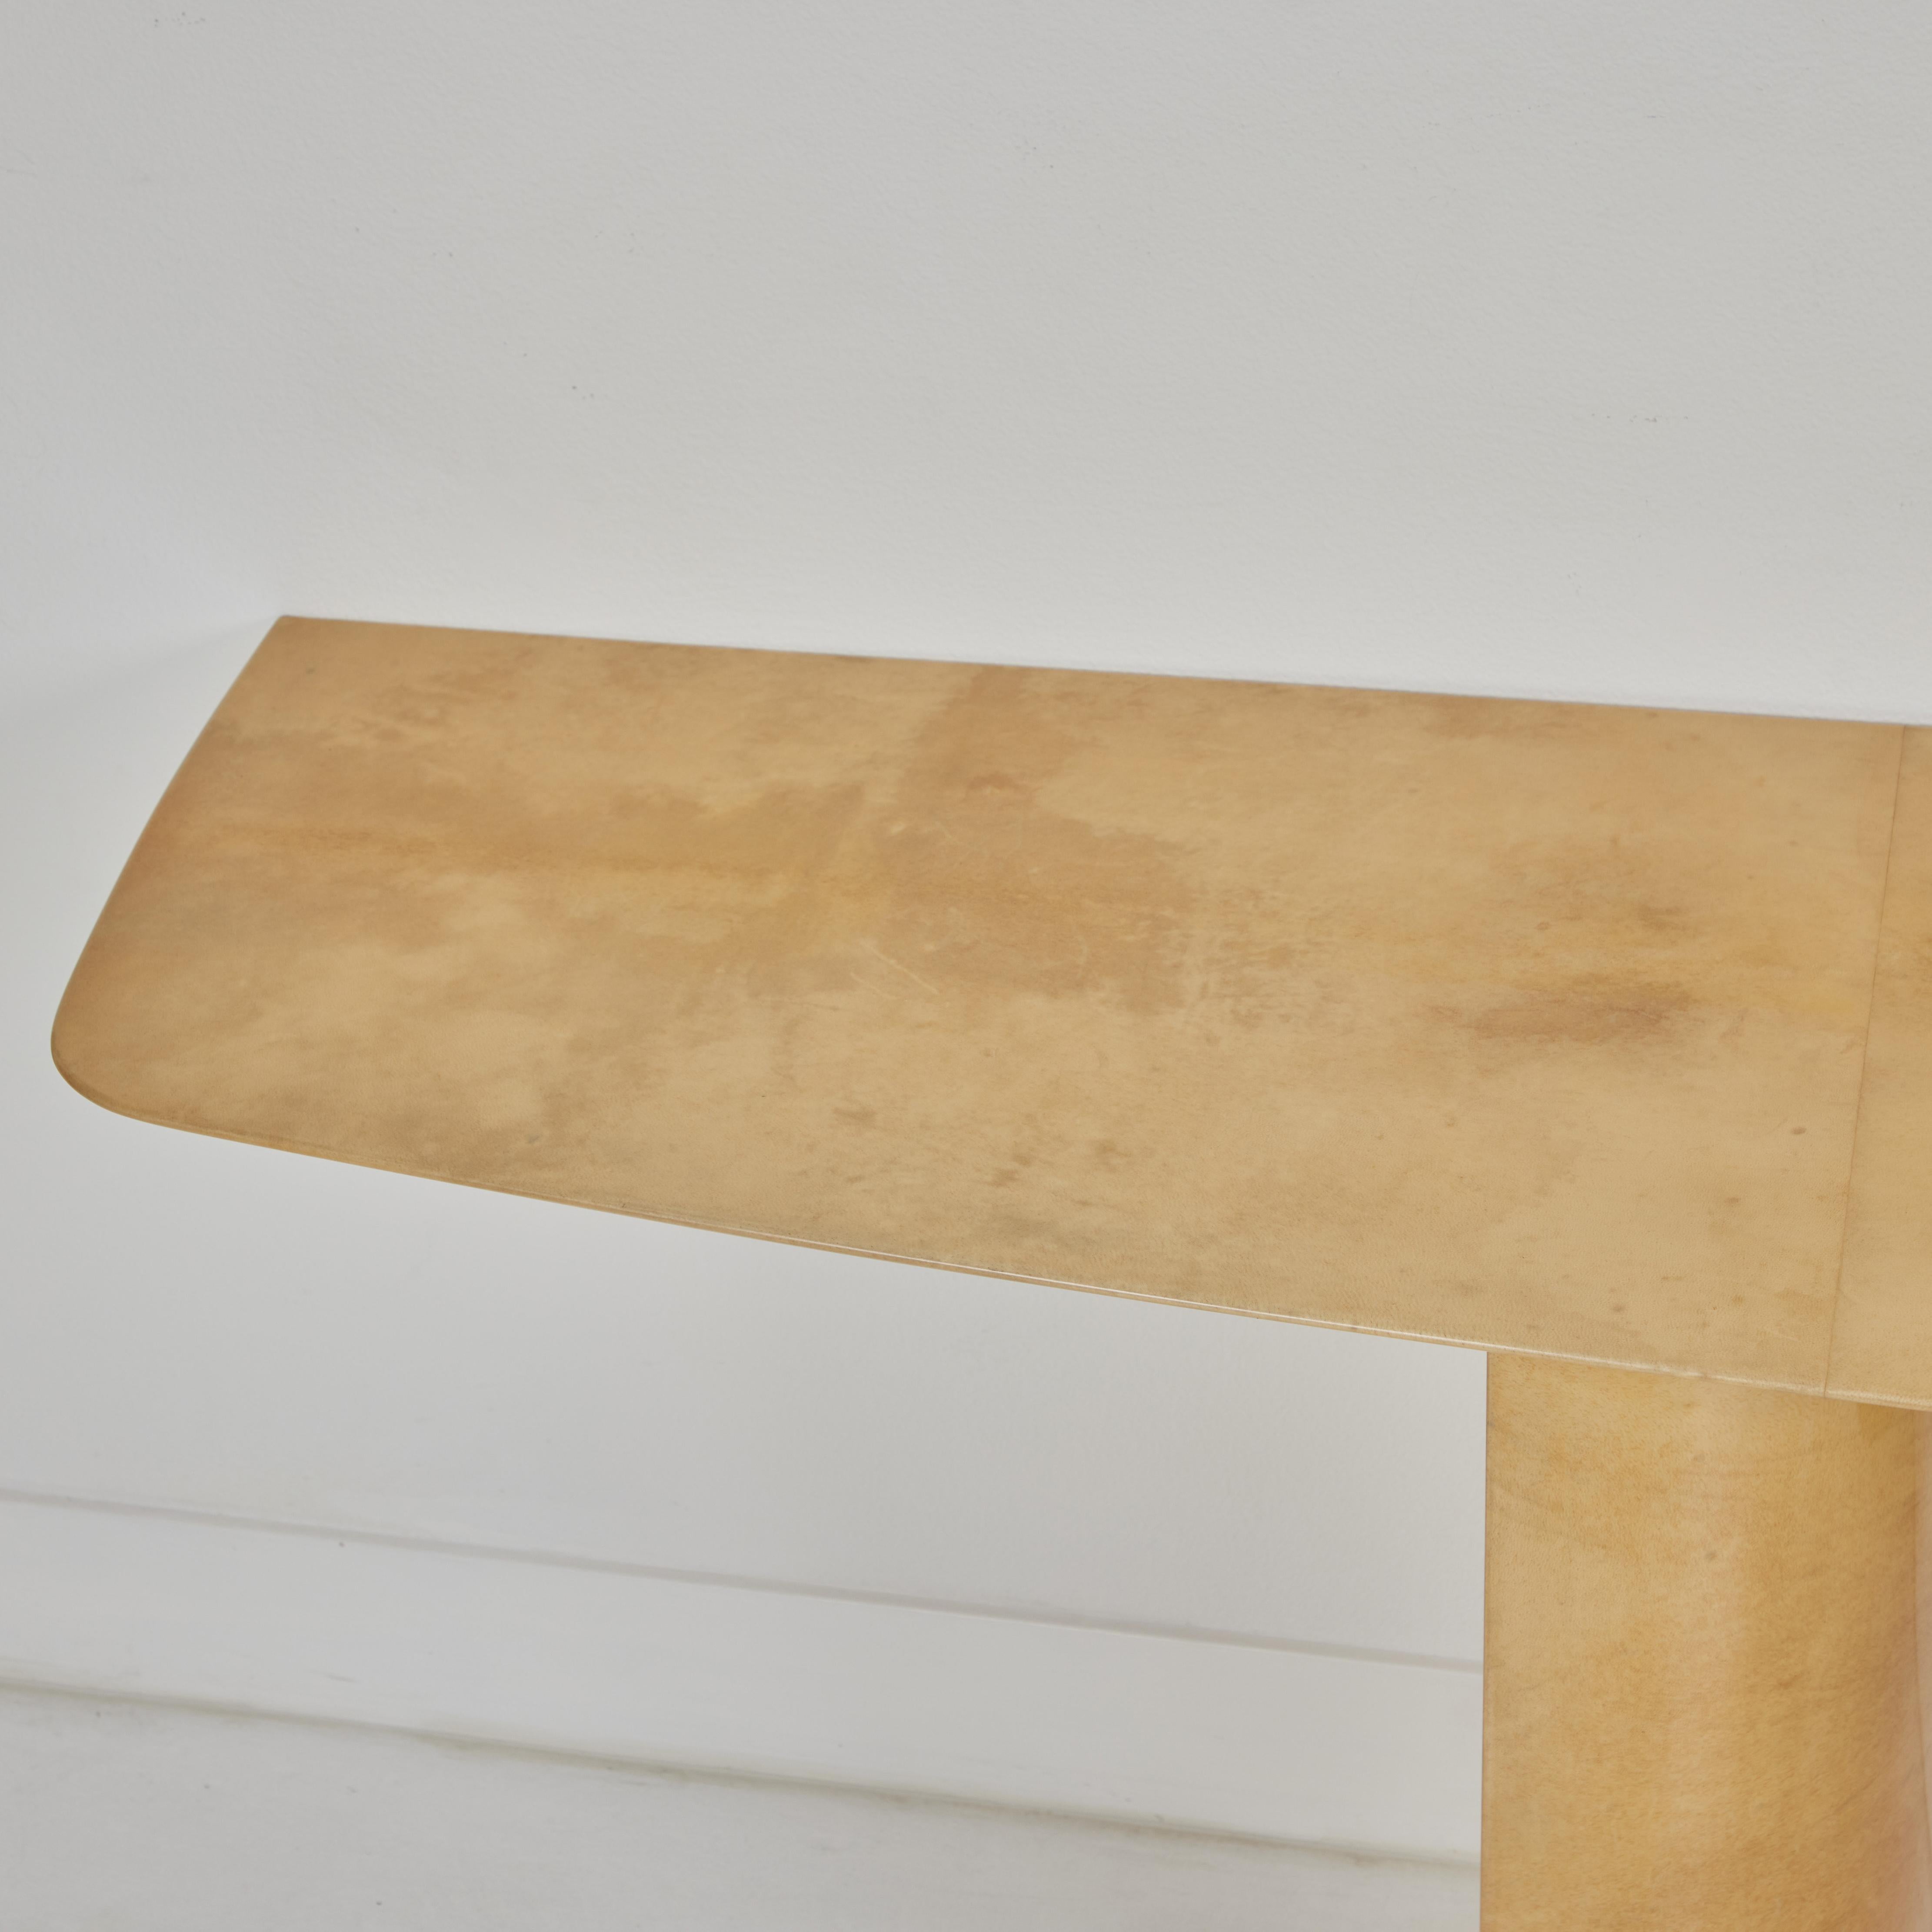 Il s'agit d'une table console magnifique et élégante, conçue et fabriquée par Aldo Tuna, une société italienne réputée pour son travail sur le parchemin.  La table présente un superbe bord biseauté sur le plateau qui repose sur deux colonnes dont le